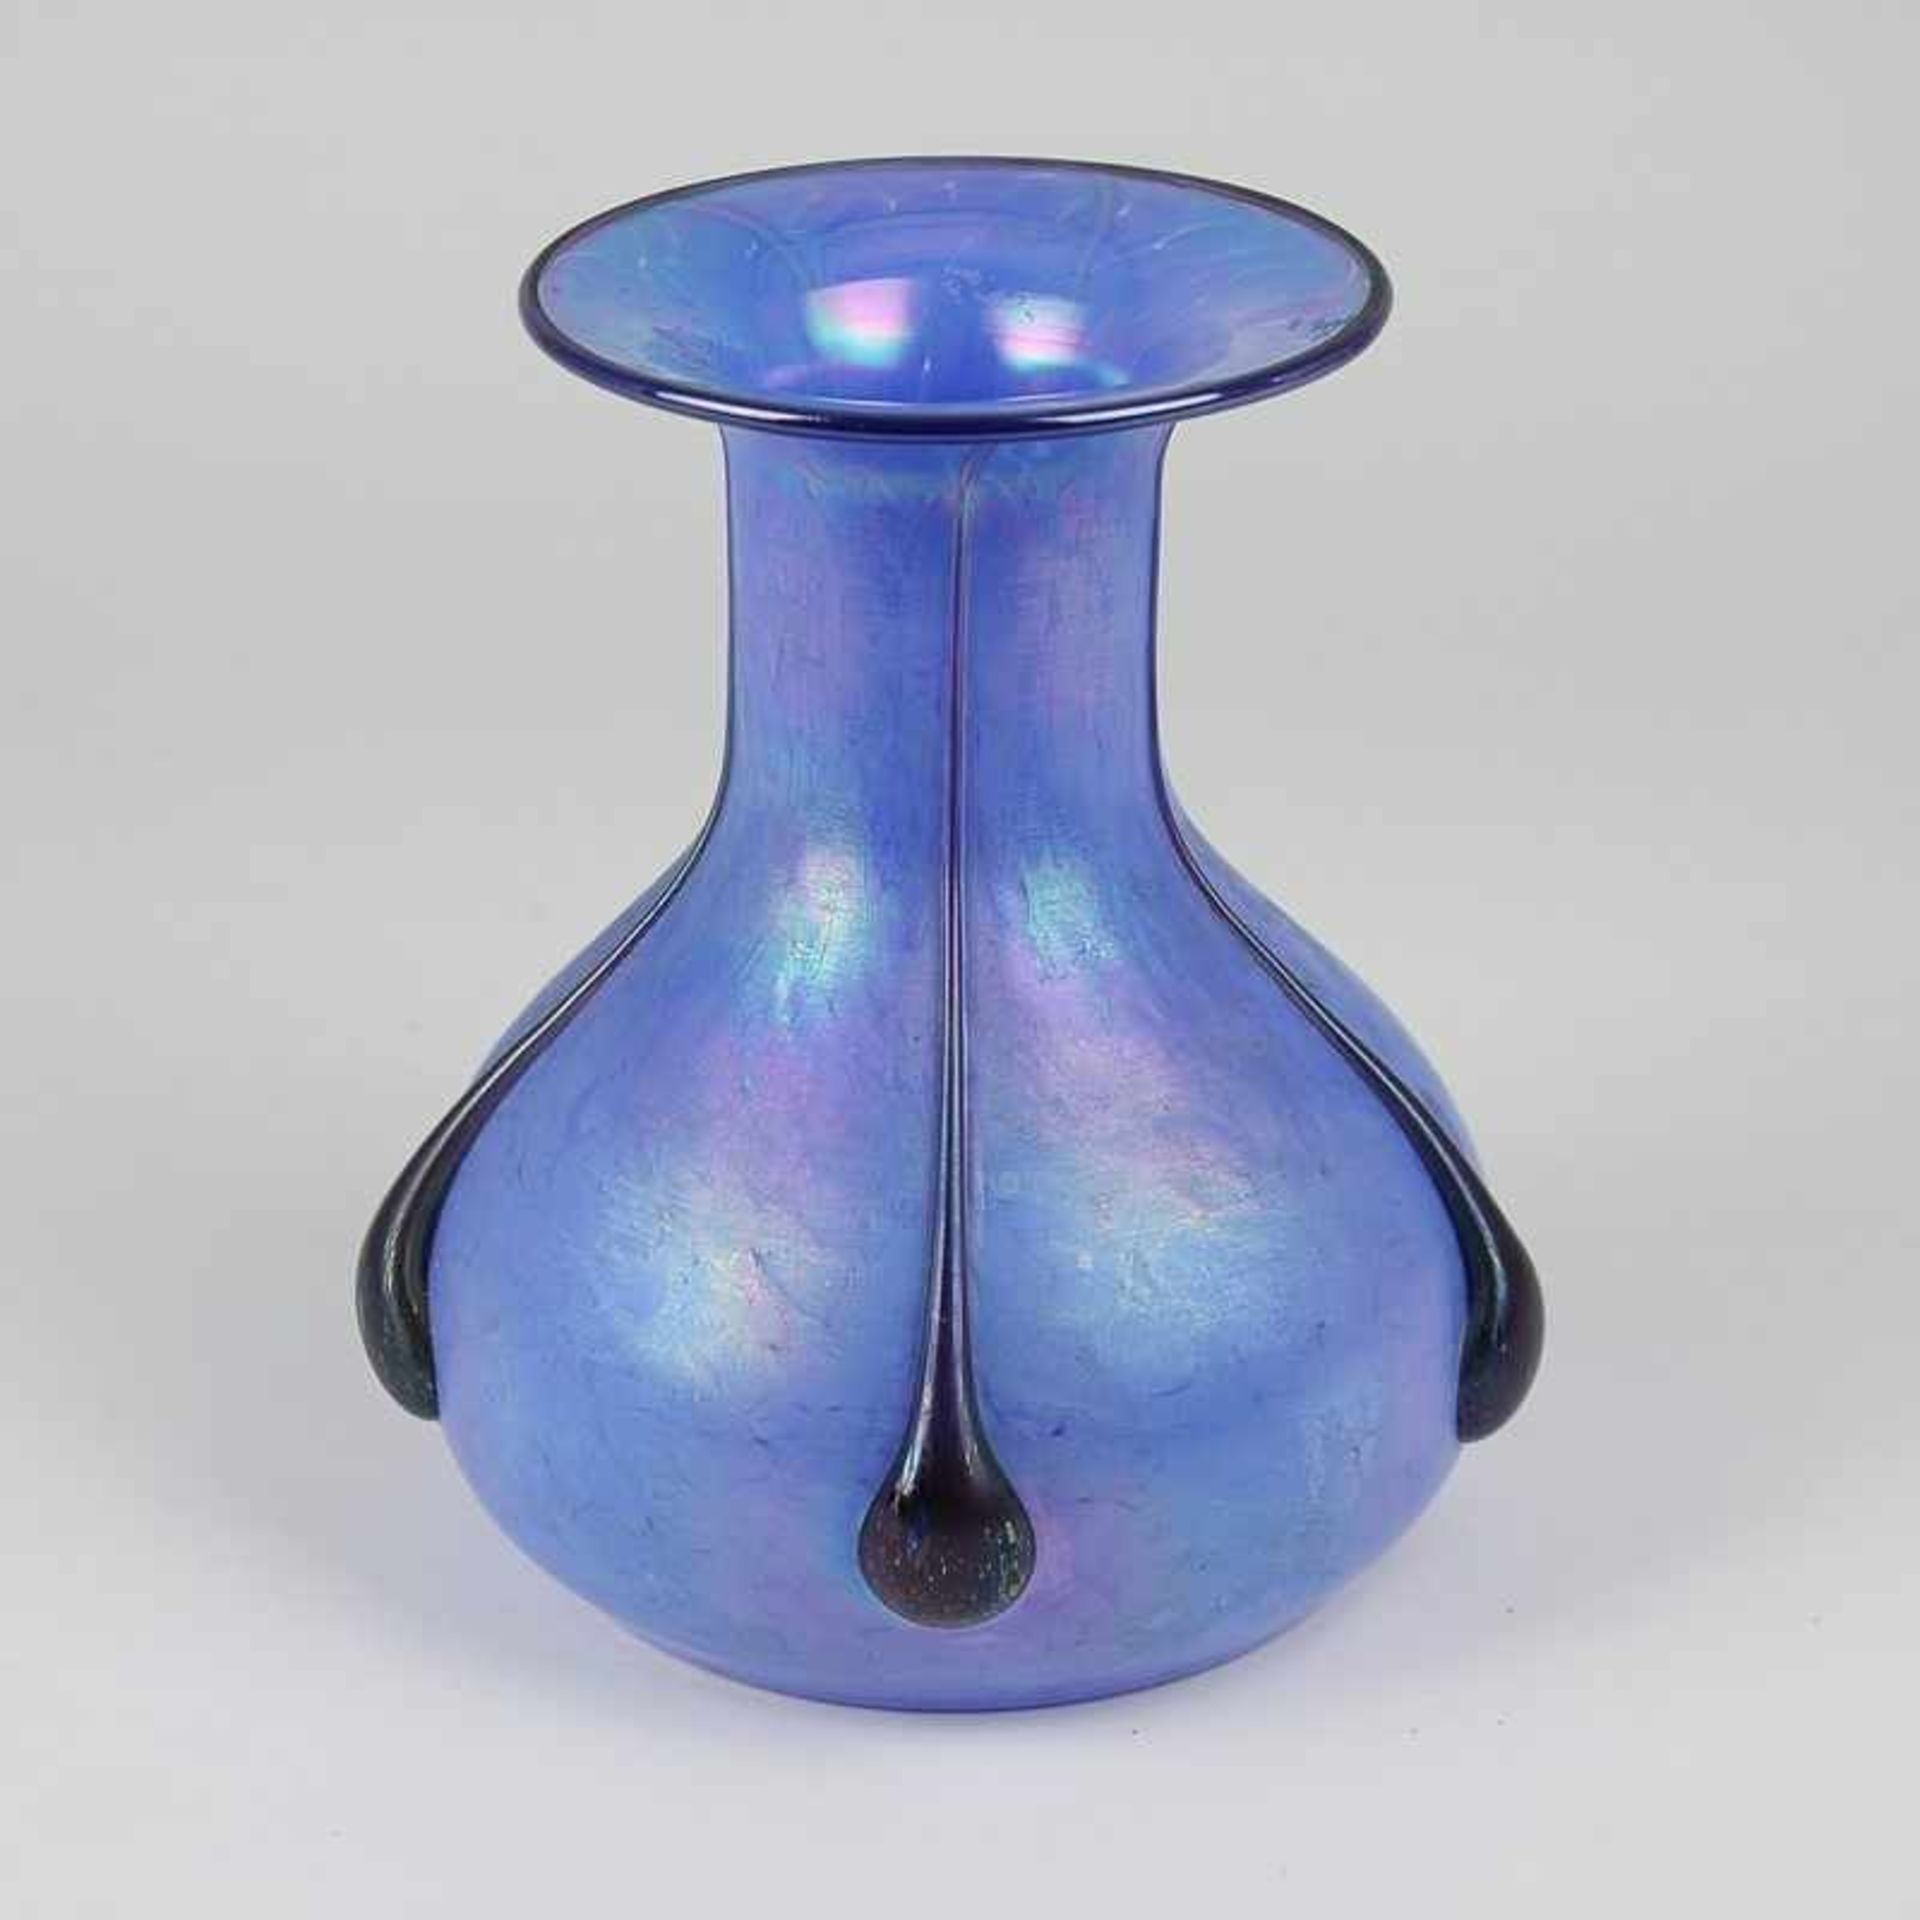 Vase bez. Loetz, farbloses Glas, runder Stand, bauchiger Korpus, eingezogener, breiter langer